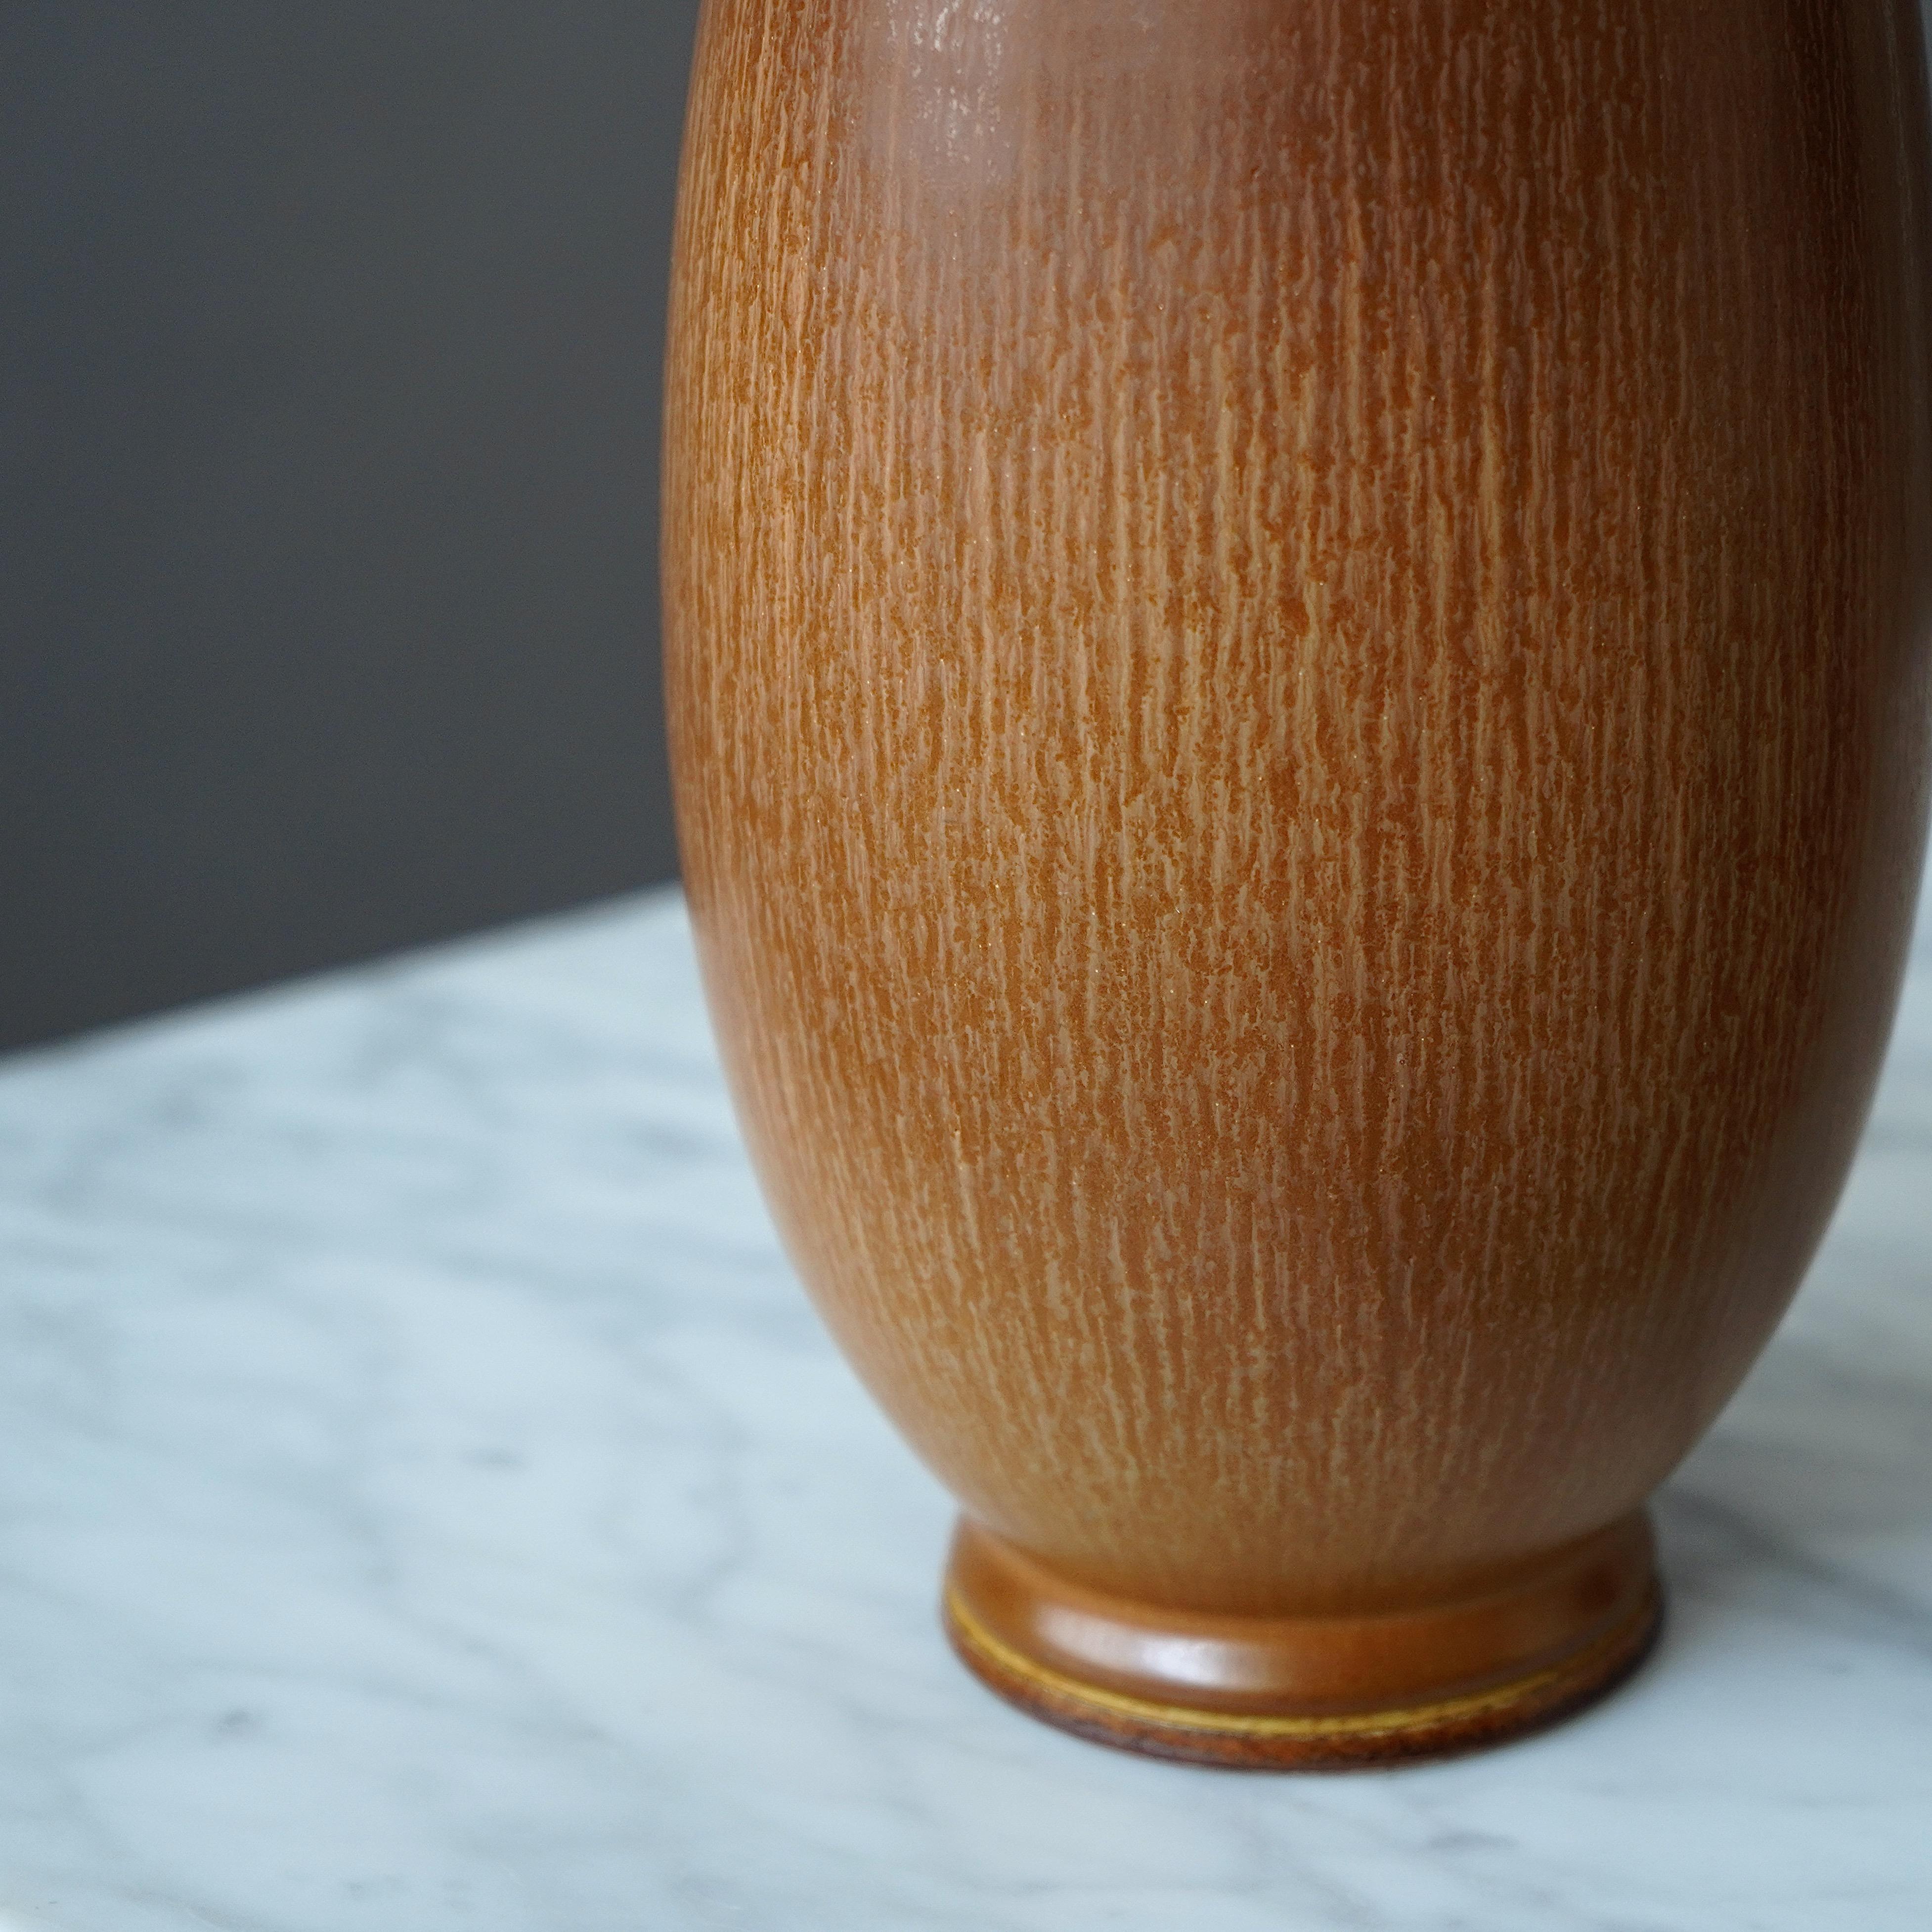 Glazed Large Stoneware Vase by Berndt Friberg for Gustavsberg Studio, Sweden, 1964 For Sale